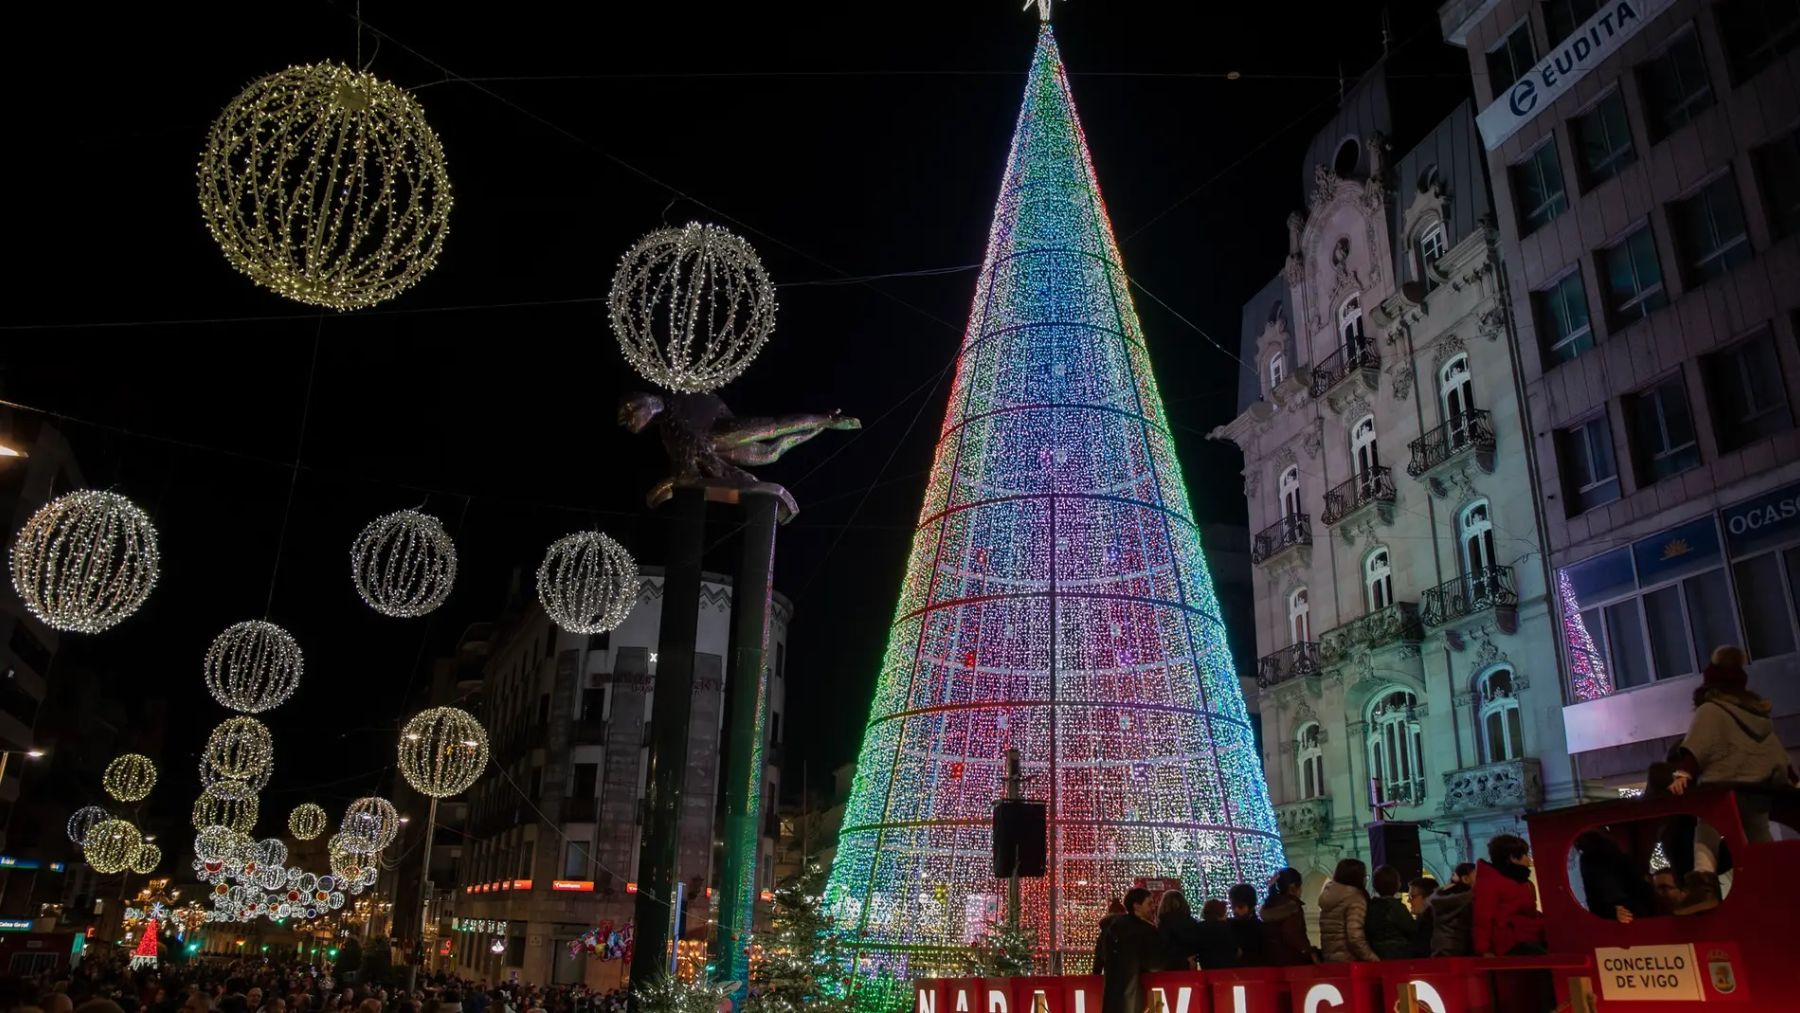 Descubre cuándo empieza y todos los detalles sobre el encendido navideño en Vigo